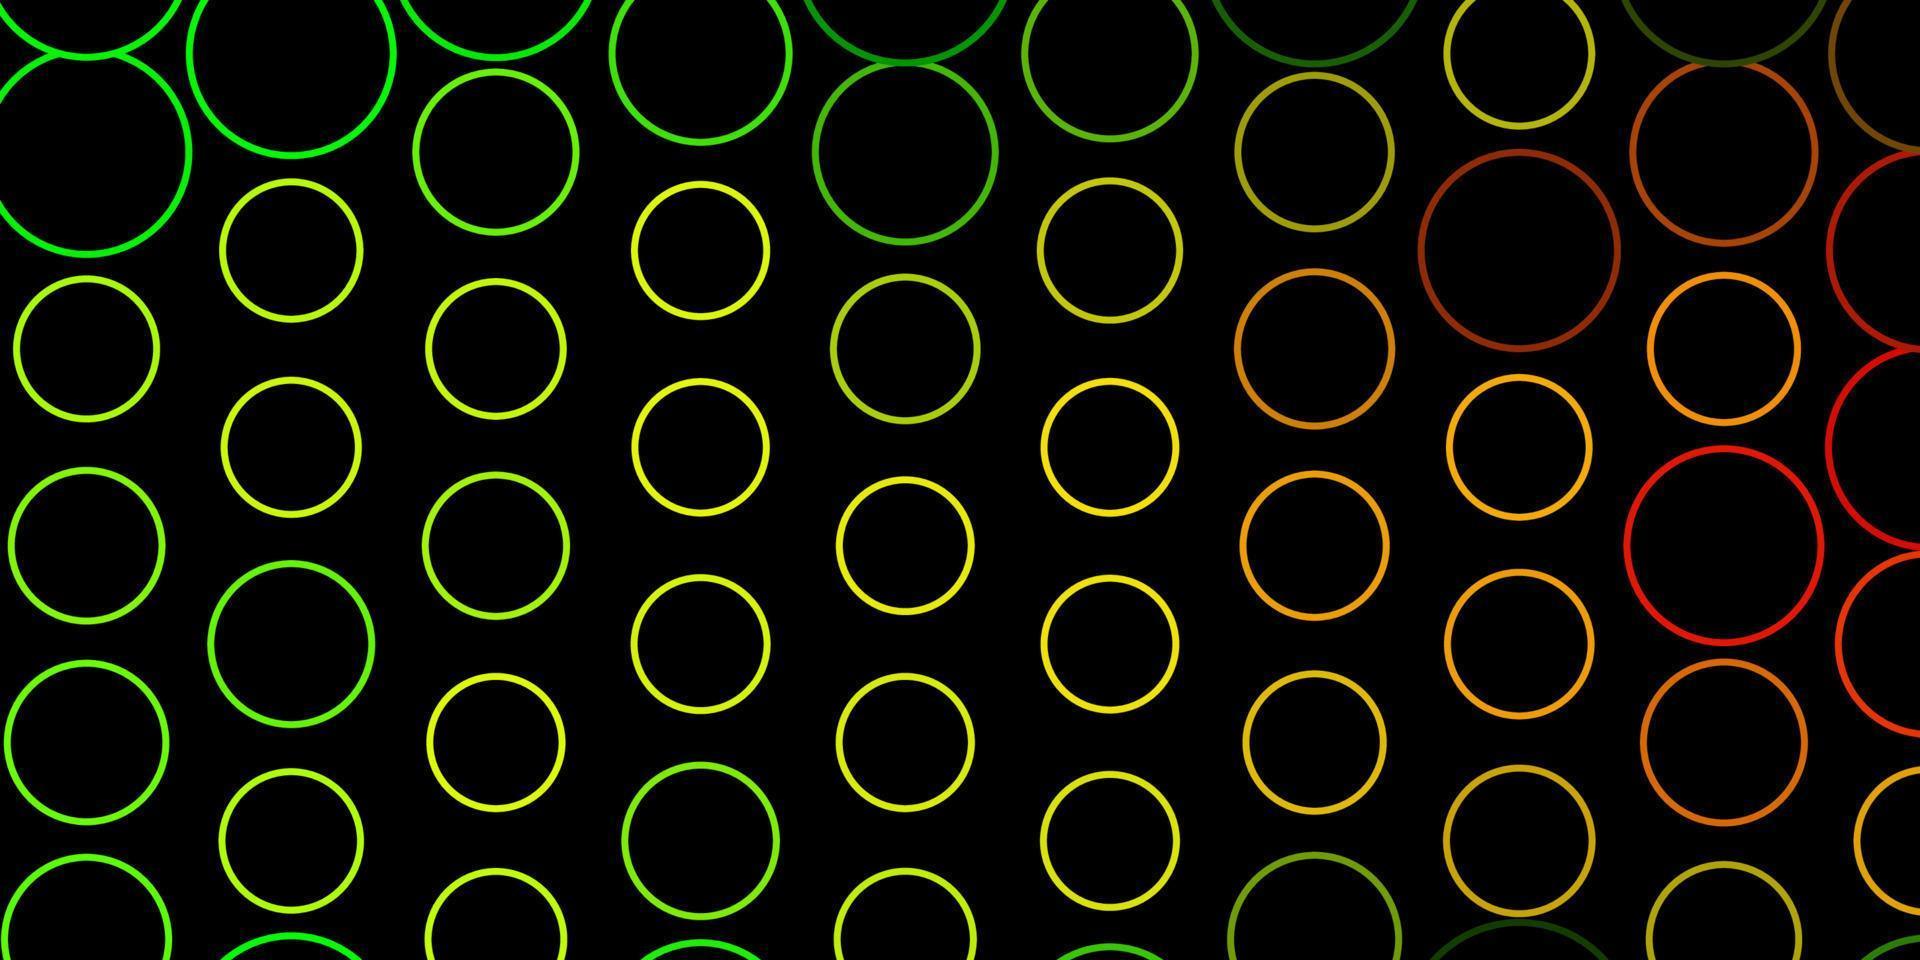 sfondo vettoriale verde scuro, giallo con cerchi.